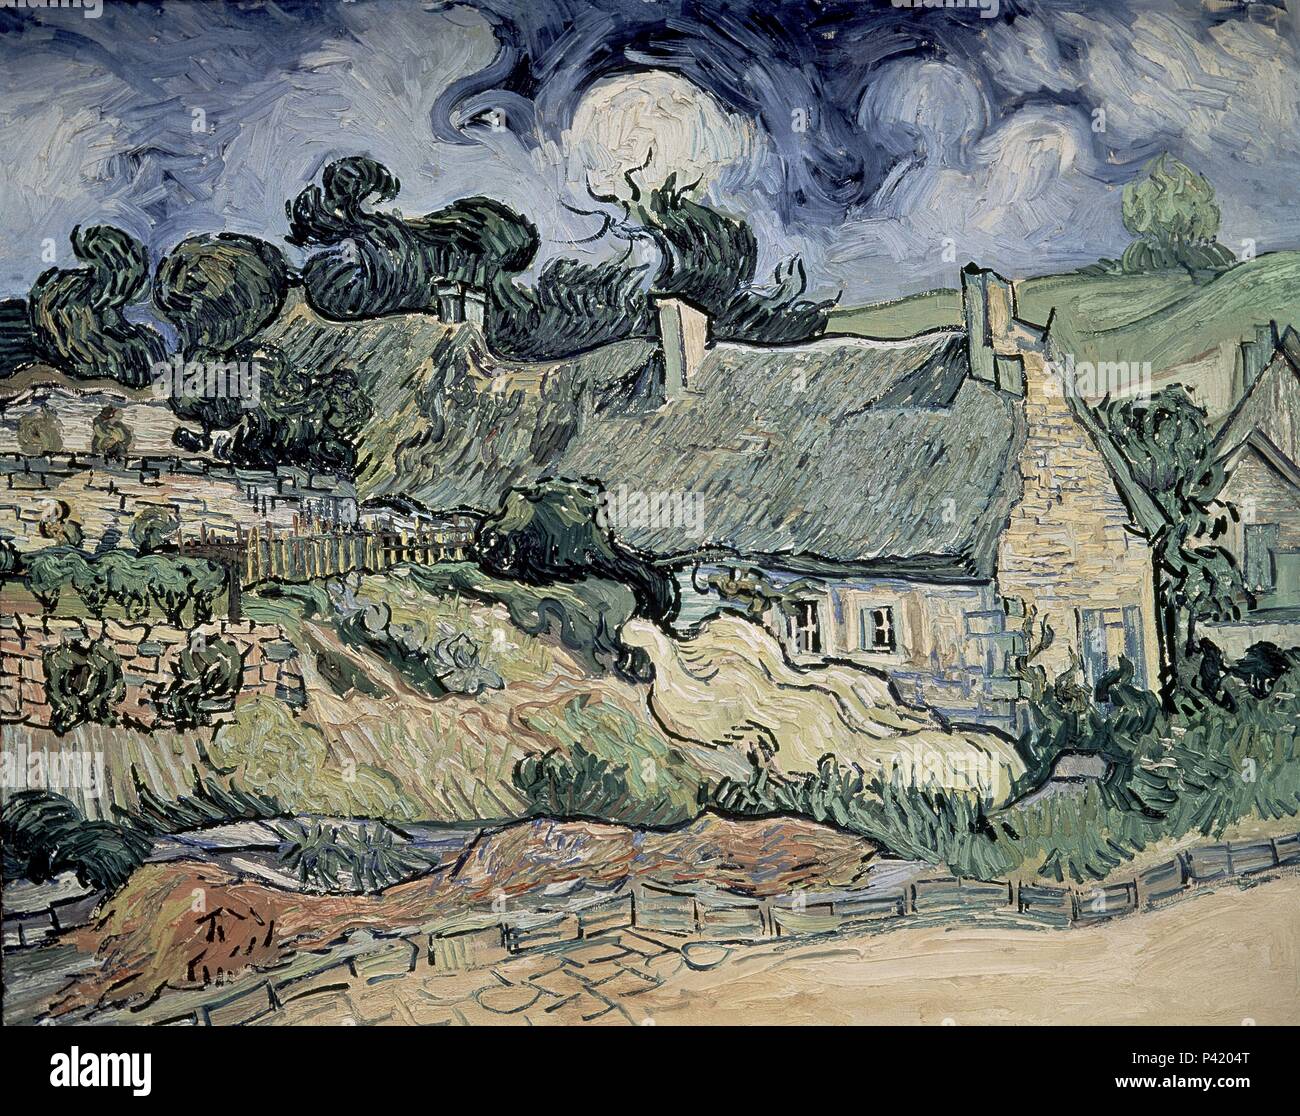 Niederländische Schule. Reetgedeckte Cottages in Cordeville. 1890. Öl auf Leinwand (73 x 92 cm). Paris, Musée d'Orsay. Autor: Vincent van Gogh (1853-1890). Lage: Musee D'Orsay, Frankreich. Stockfoto